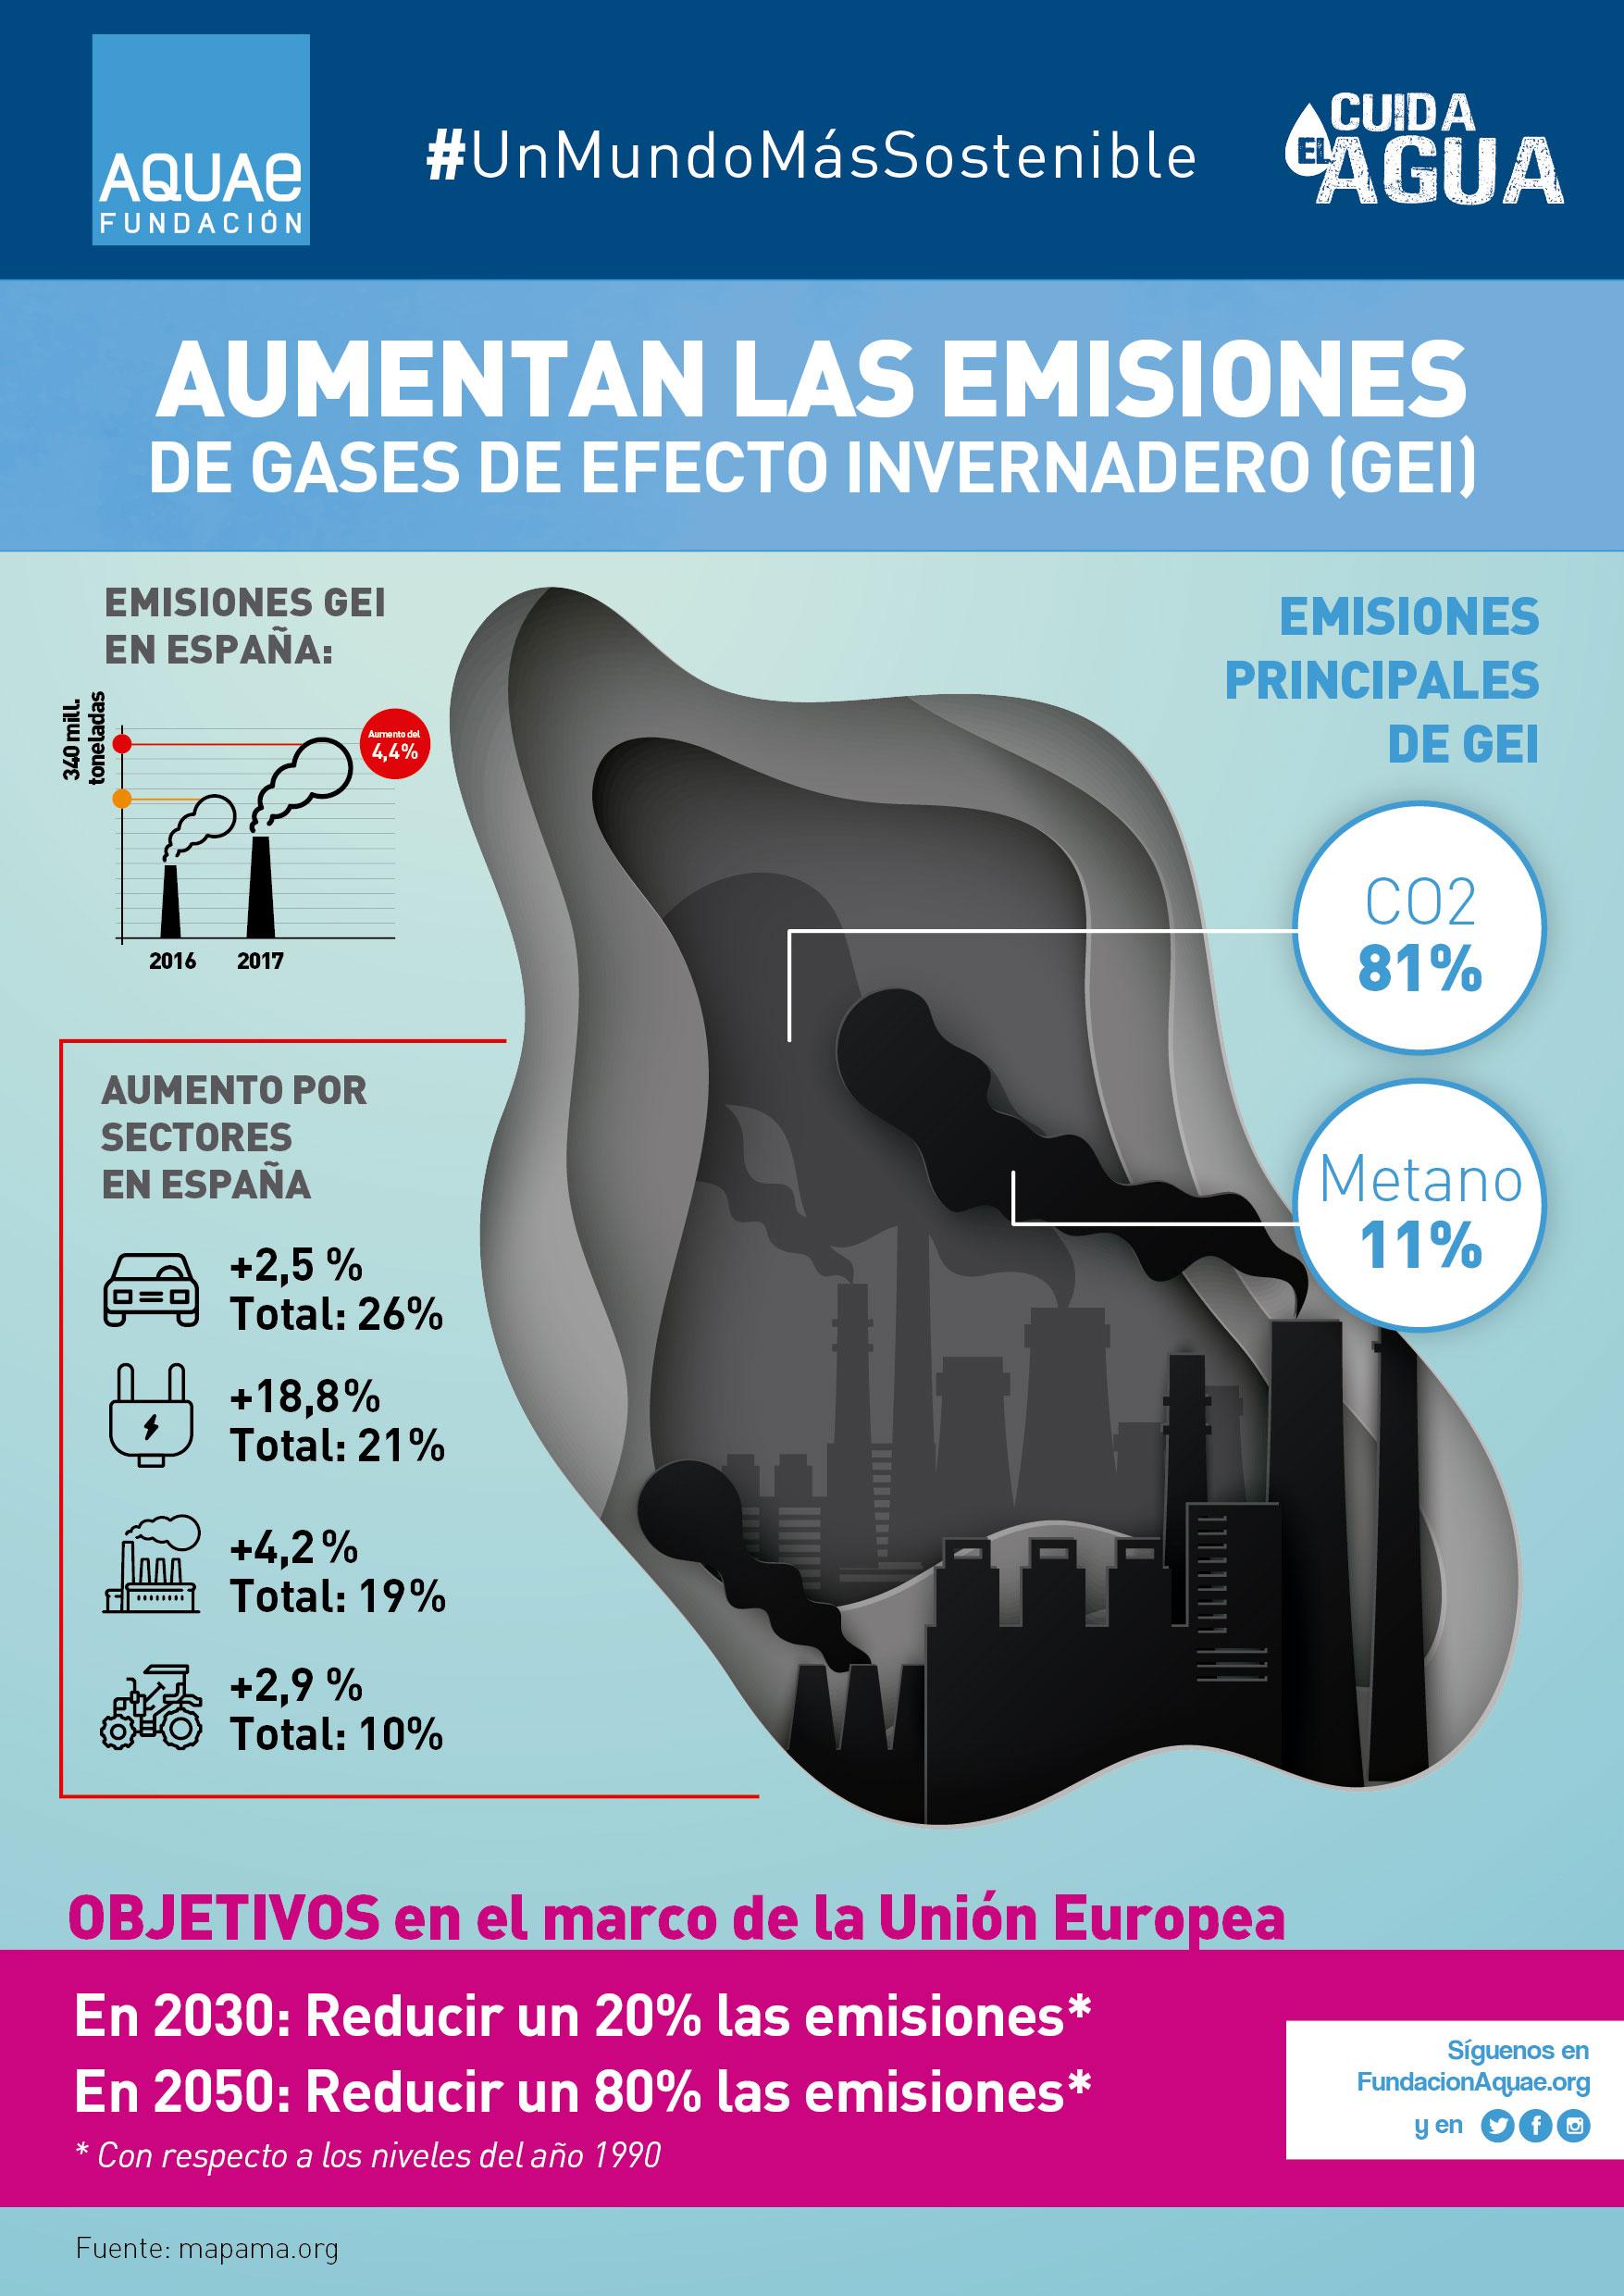 Infografía elaborada por Aquae sobre las emisiones de gases de efecto invernadero